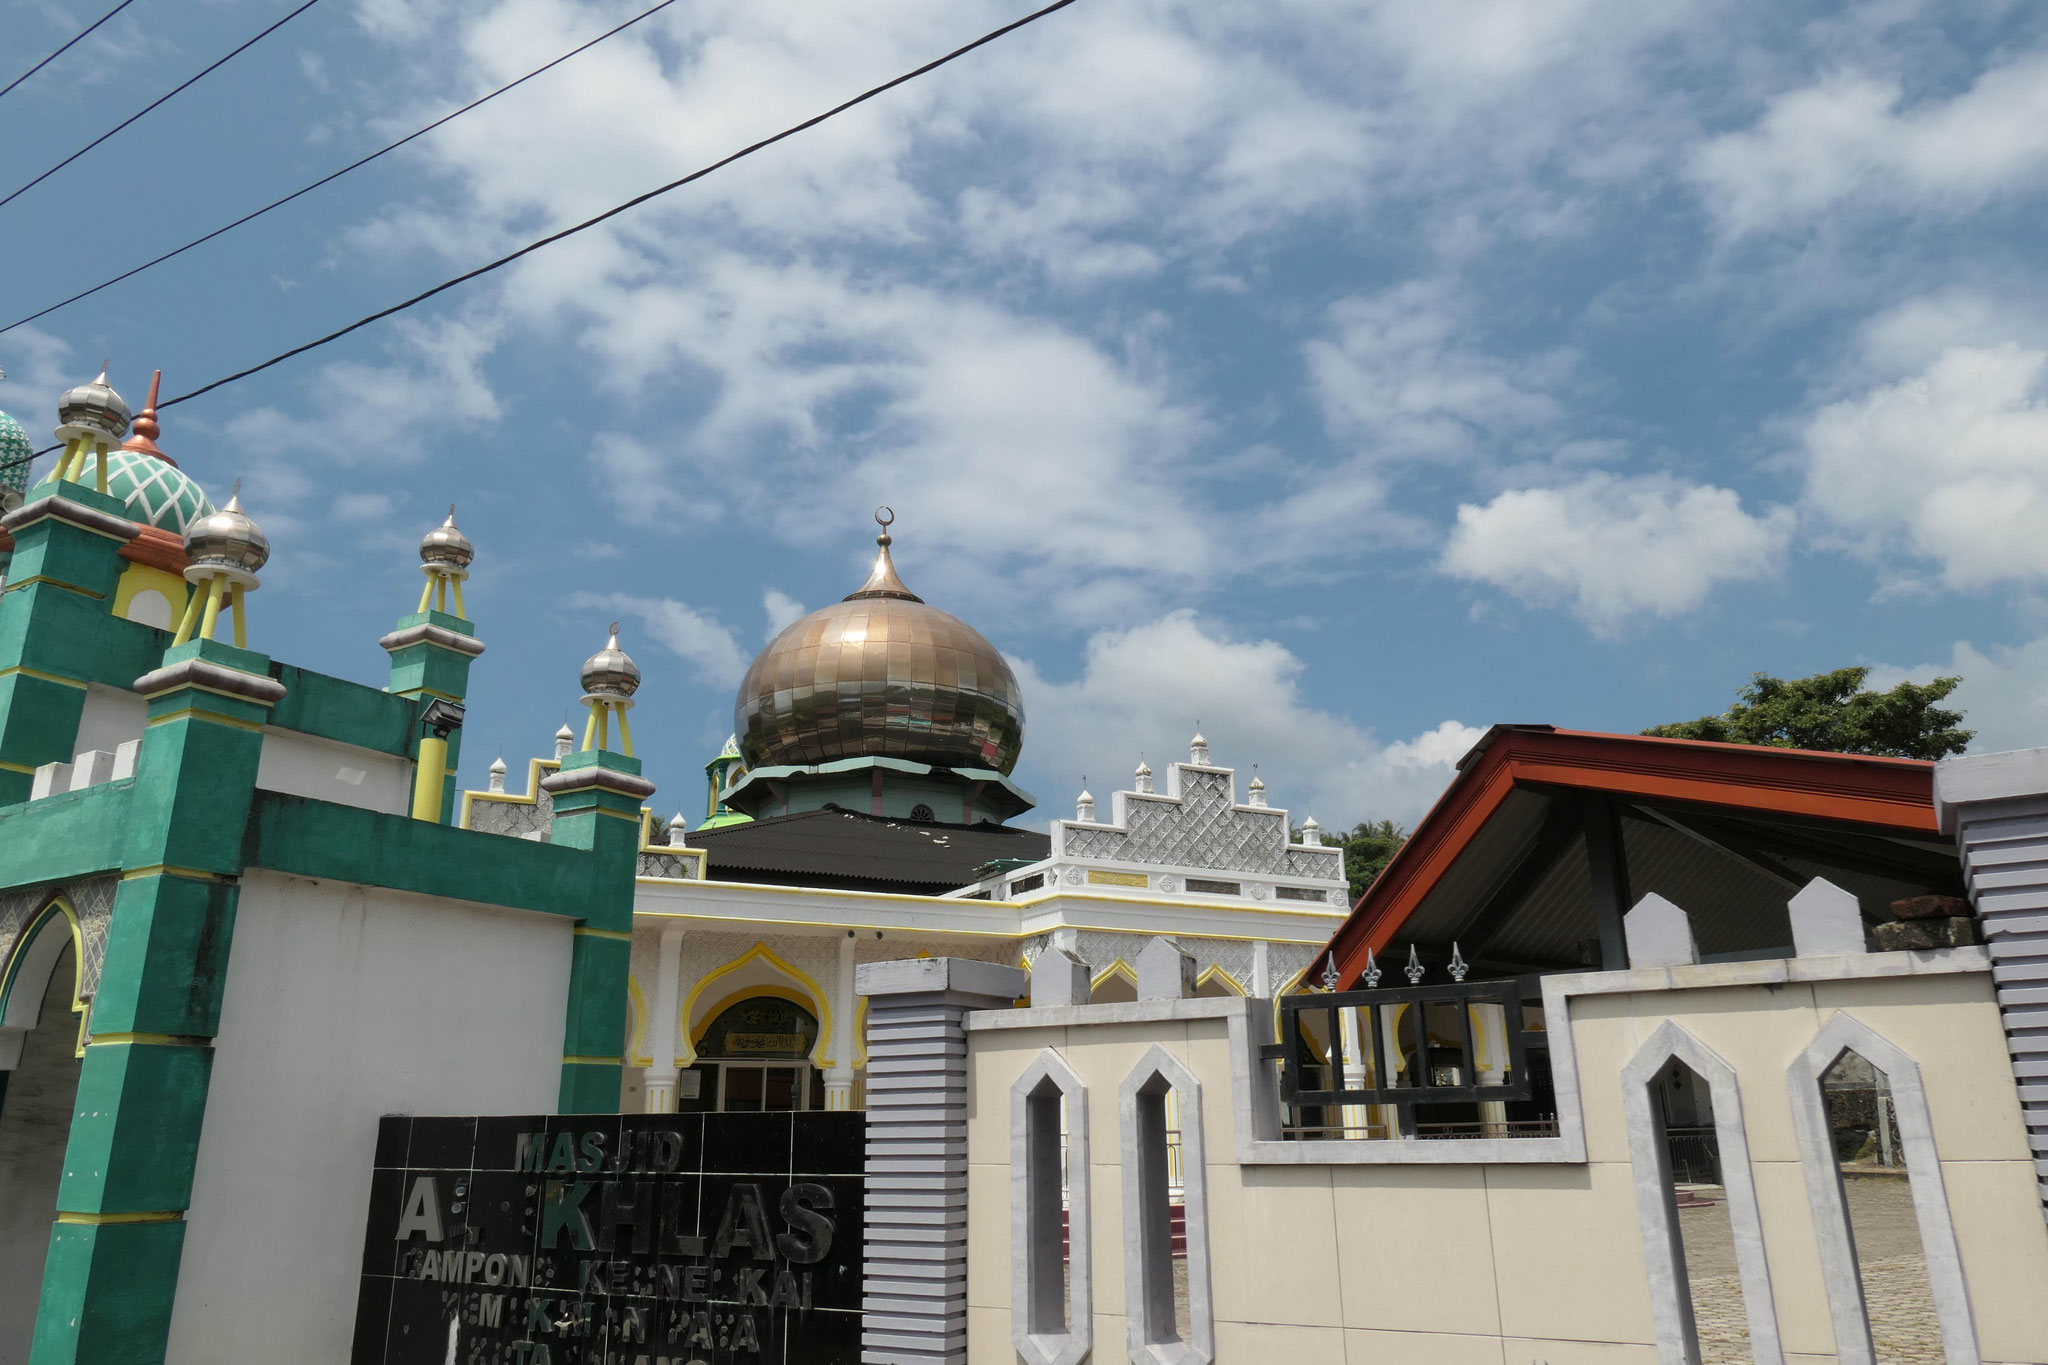 stehen Moscheen am Straßenrand und rufen regelmäßig zu Gebet auf, so dass kein Ort unerreicht bleibt.